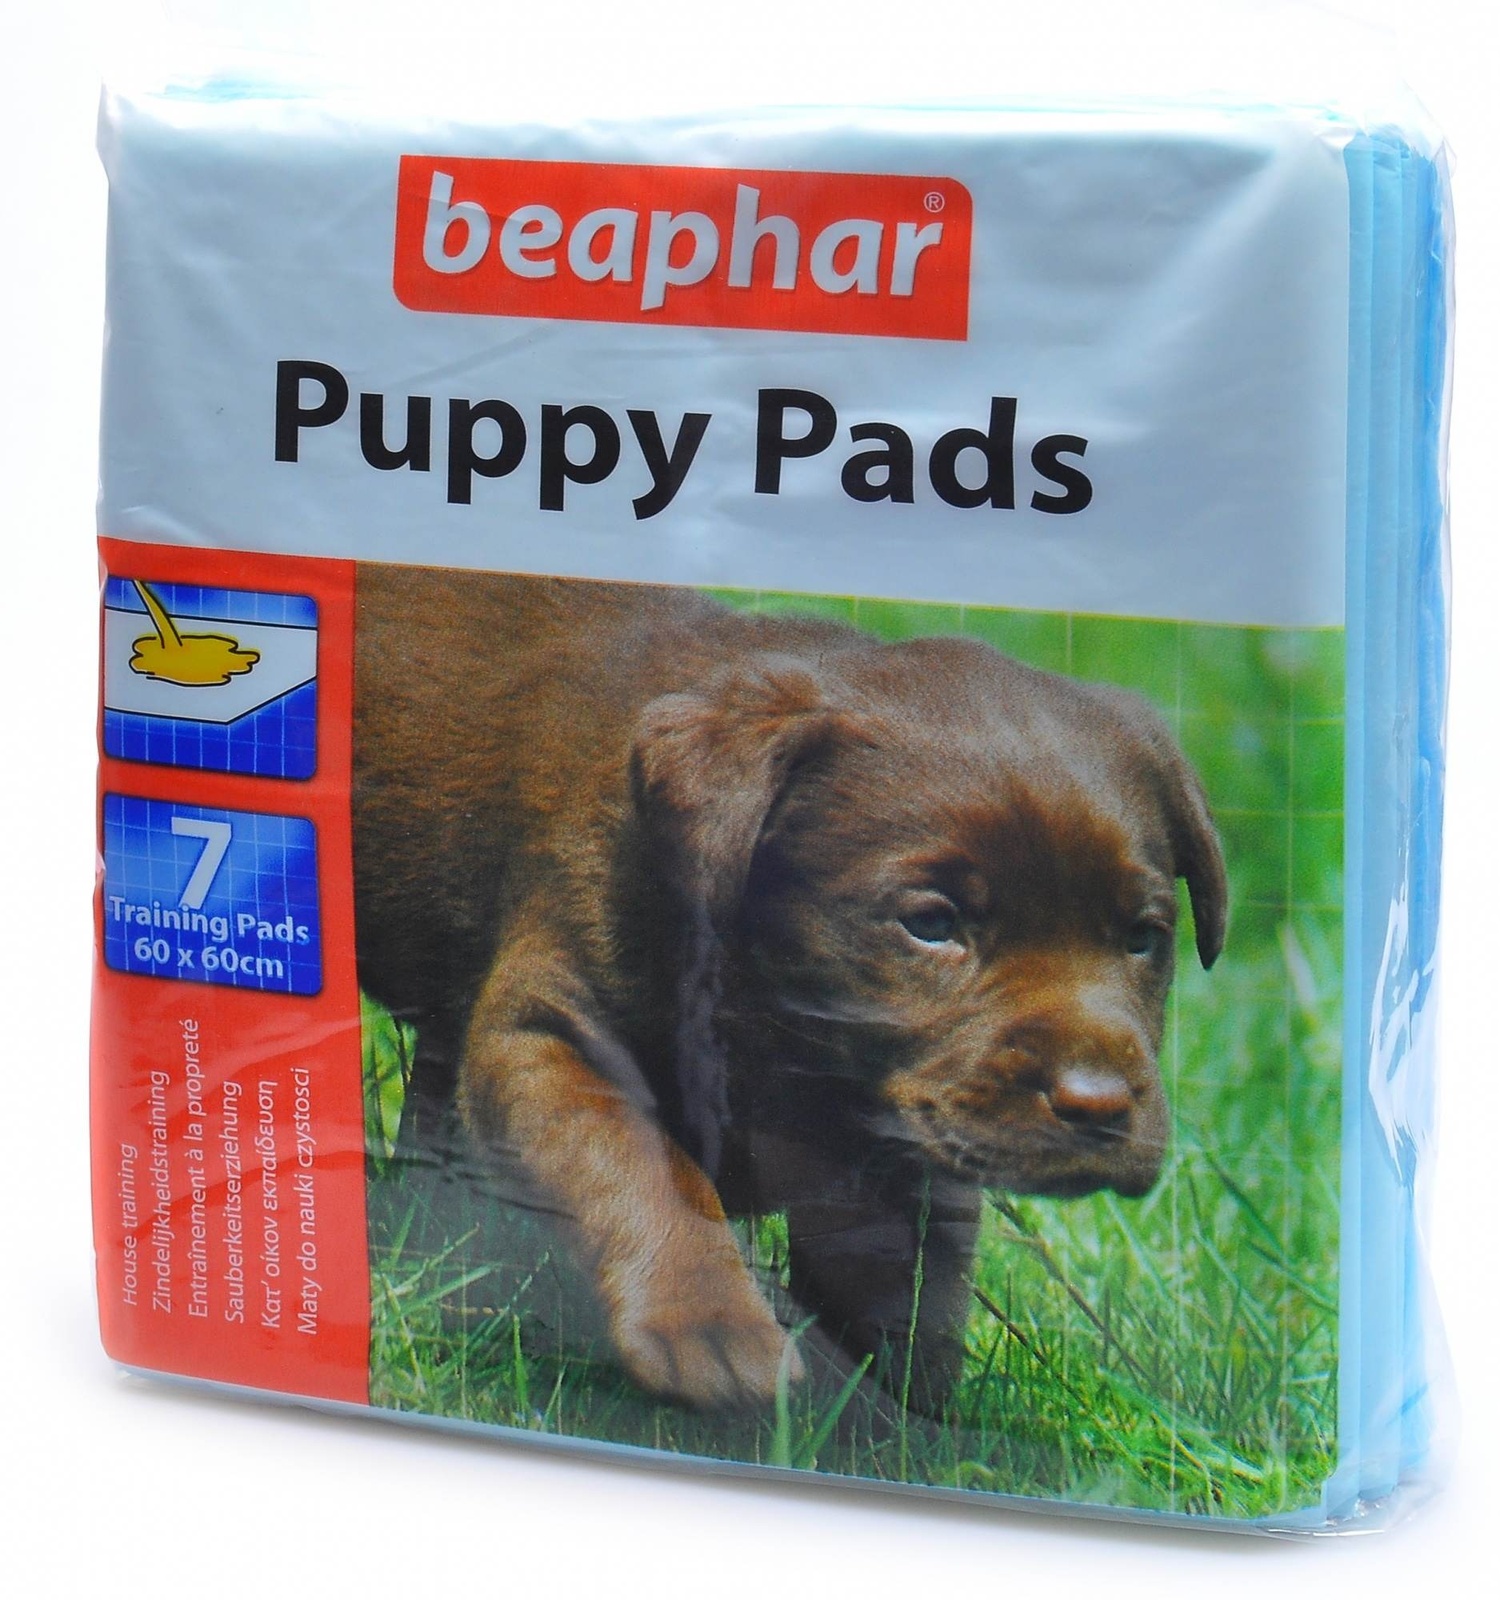 Beaphar Beaphar пеленки для щенков, 7 шт. (47 г) beaphar beaphar набор для вскармливания щенков и котят 100 г